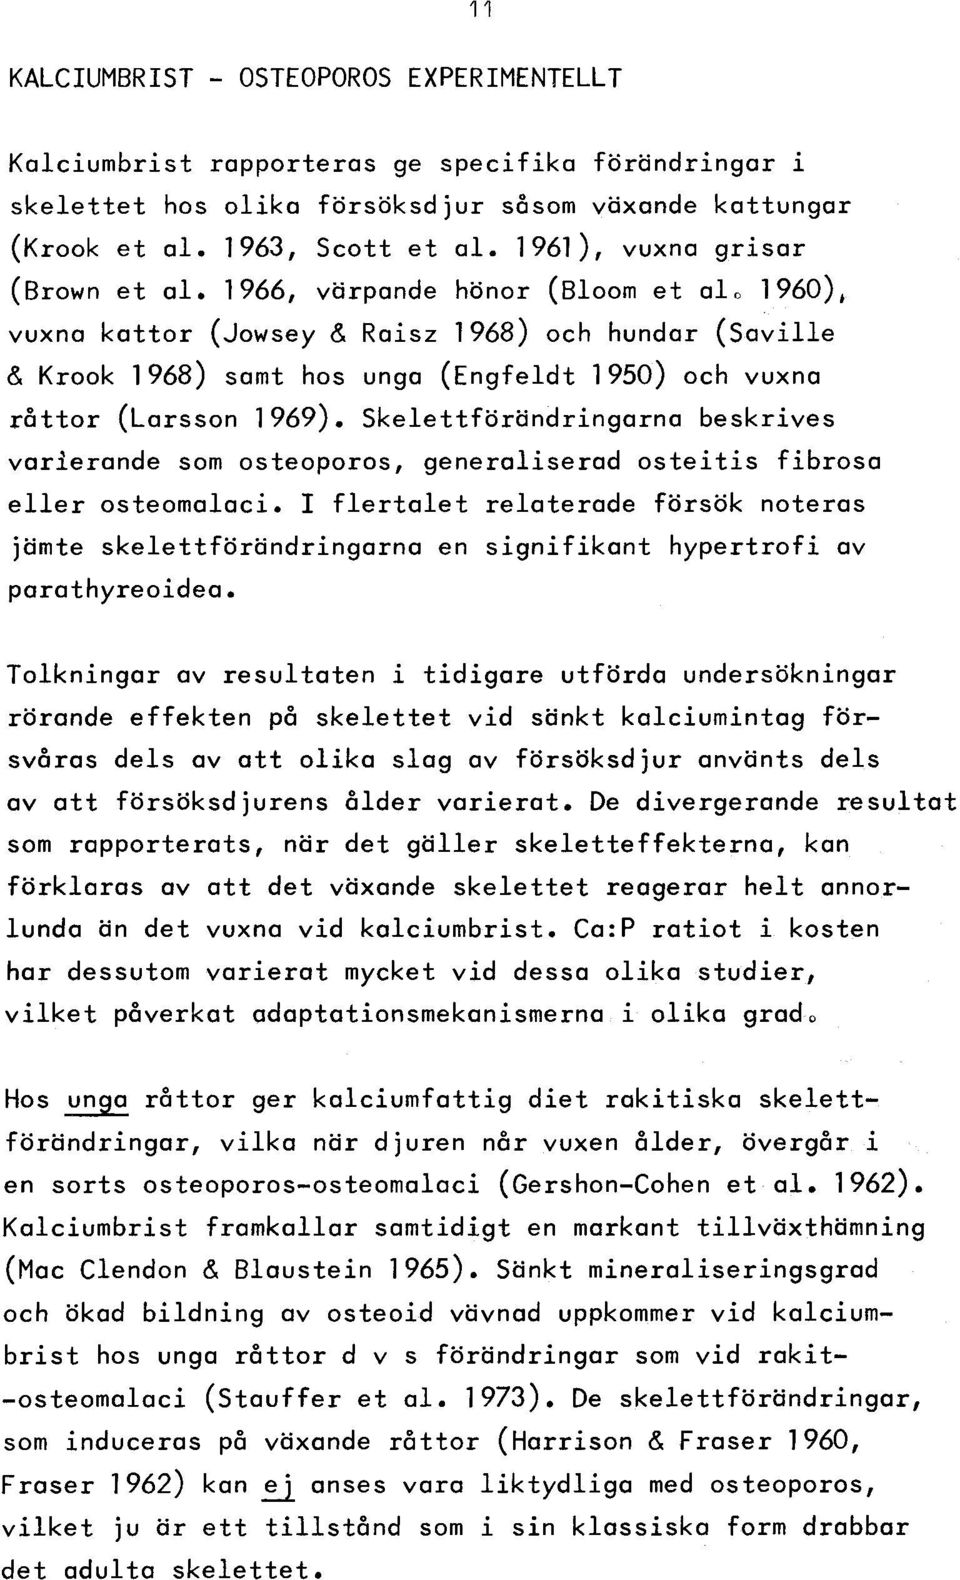 1966, värpande hönor (Bloom et alo 1960), vuxna k a tto r (Jowsey & Raisz 1968) och hundar (S a v ille & Krook 1968) samt hos unga (E ngfeldt 1950) och vuxna r å tto r (Larsson 1969).